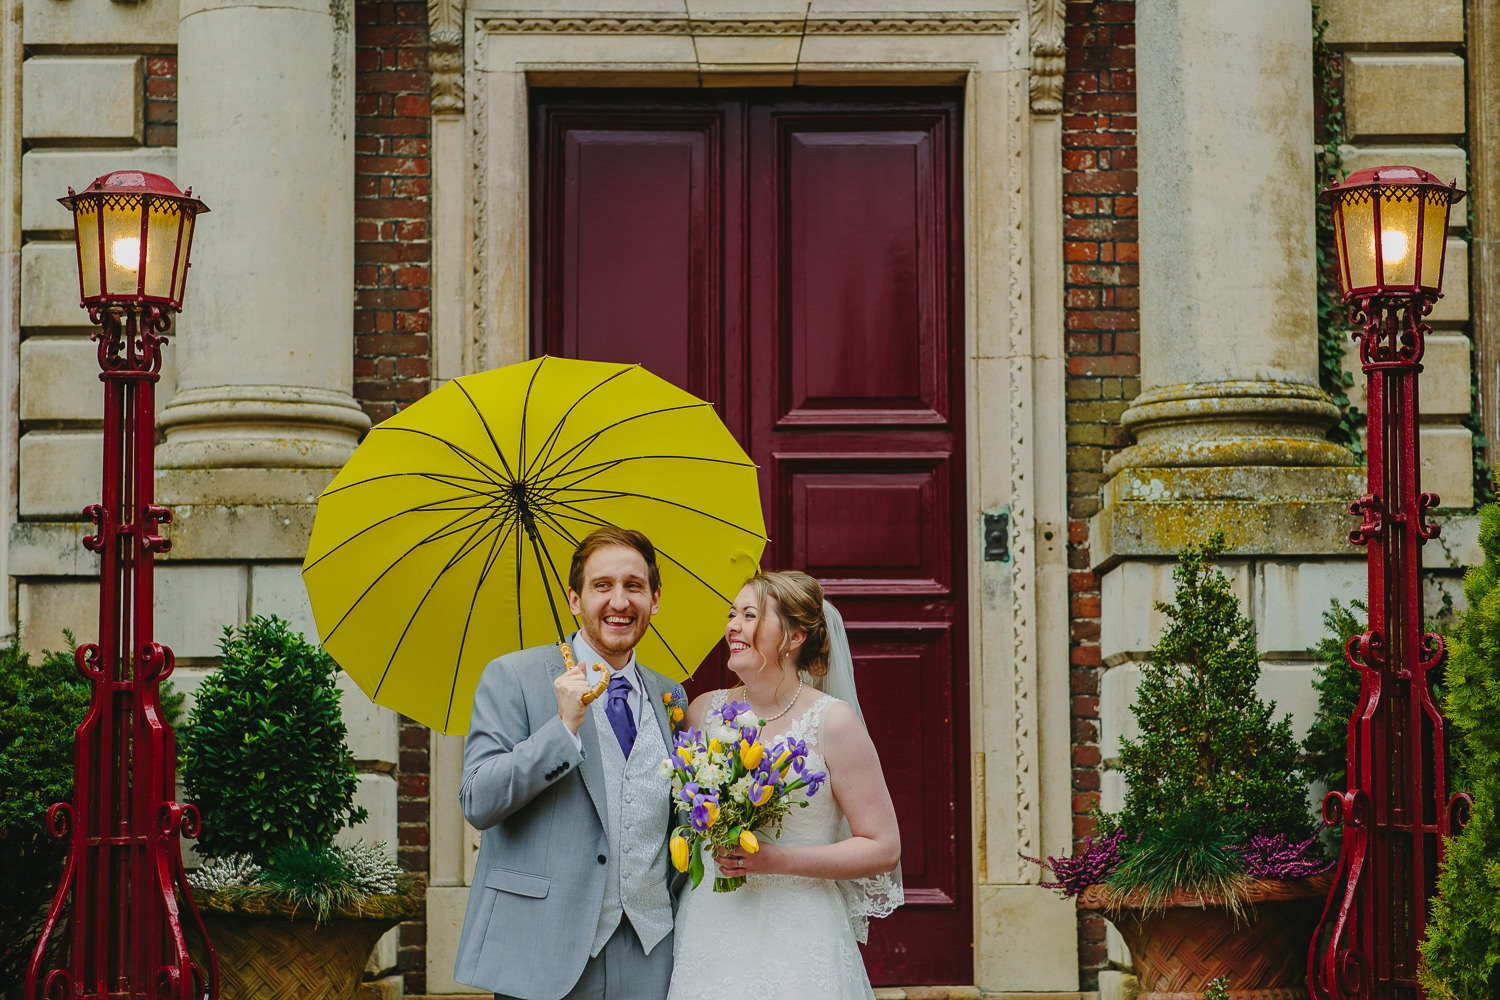 Bride and groom, yellow umbrella and red door